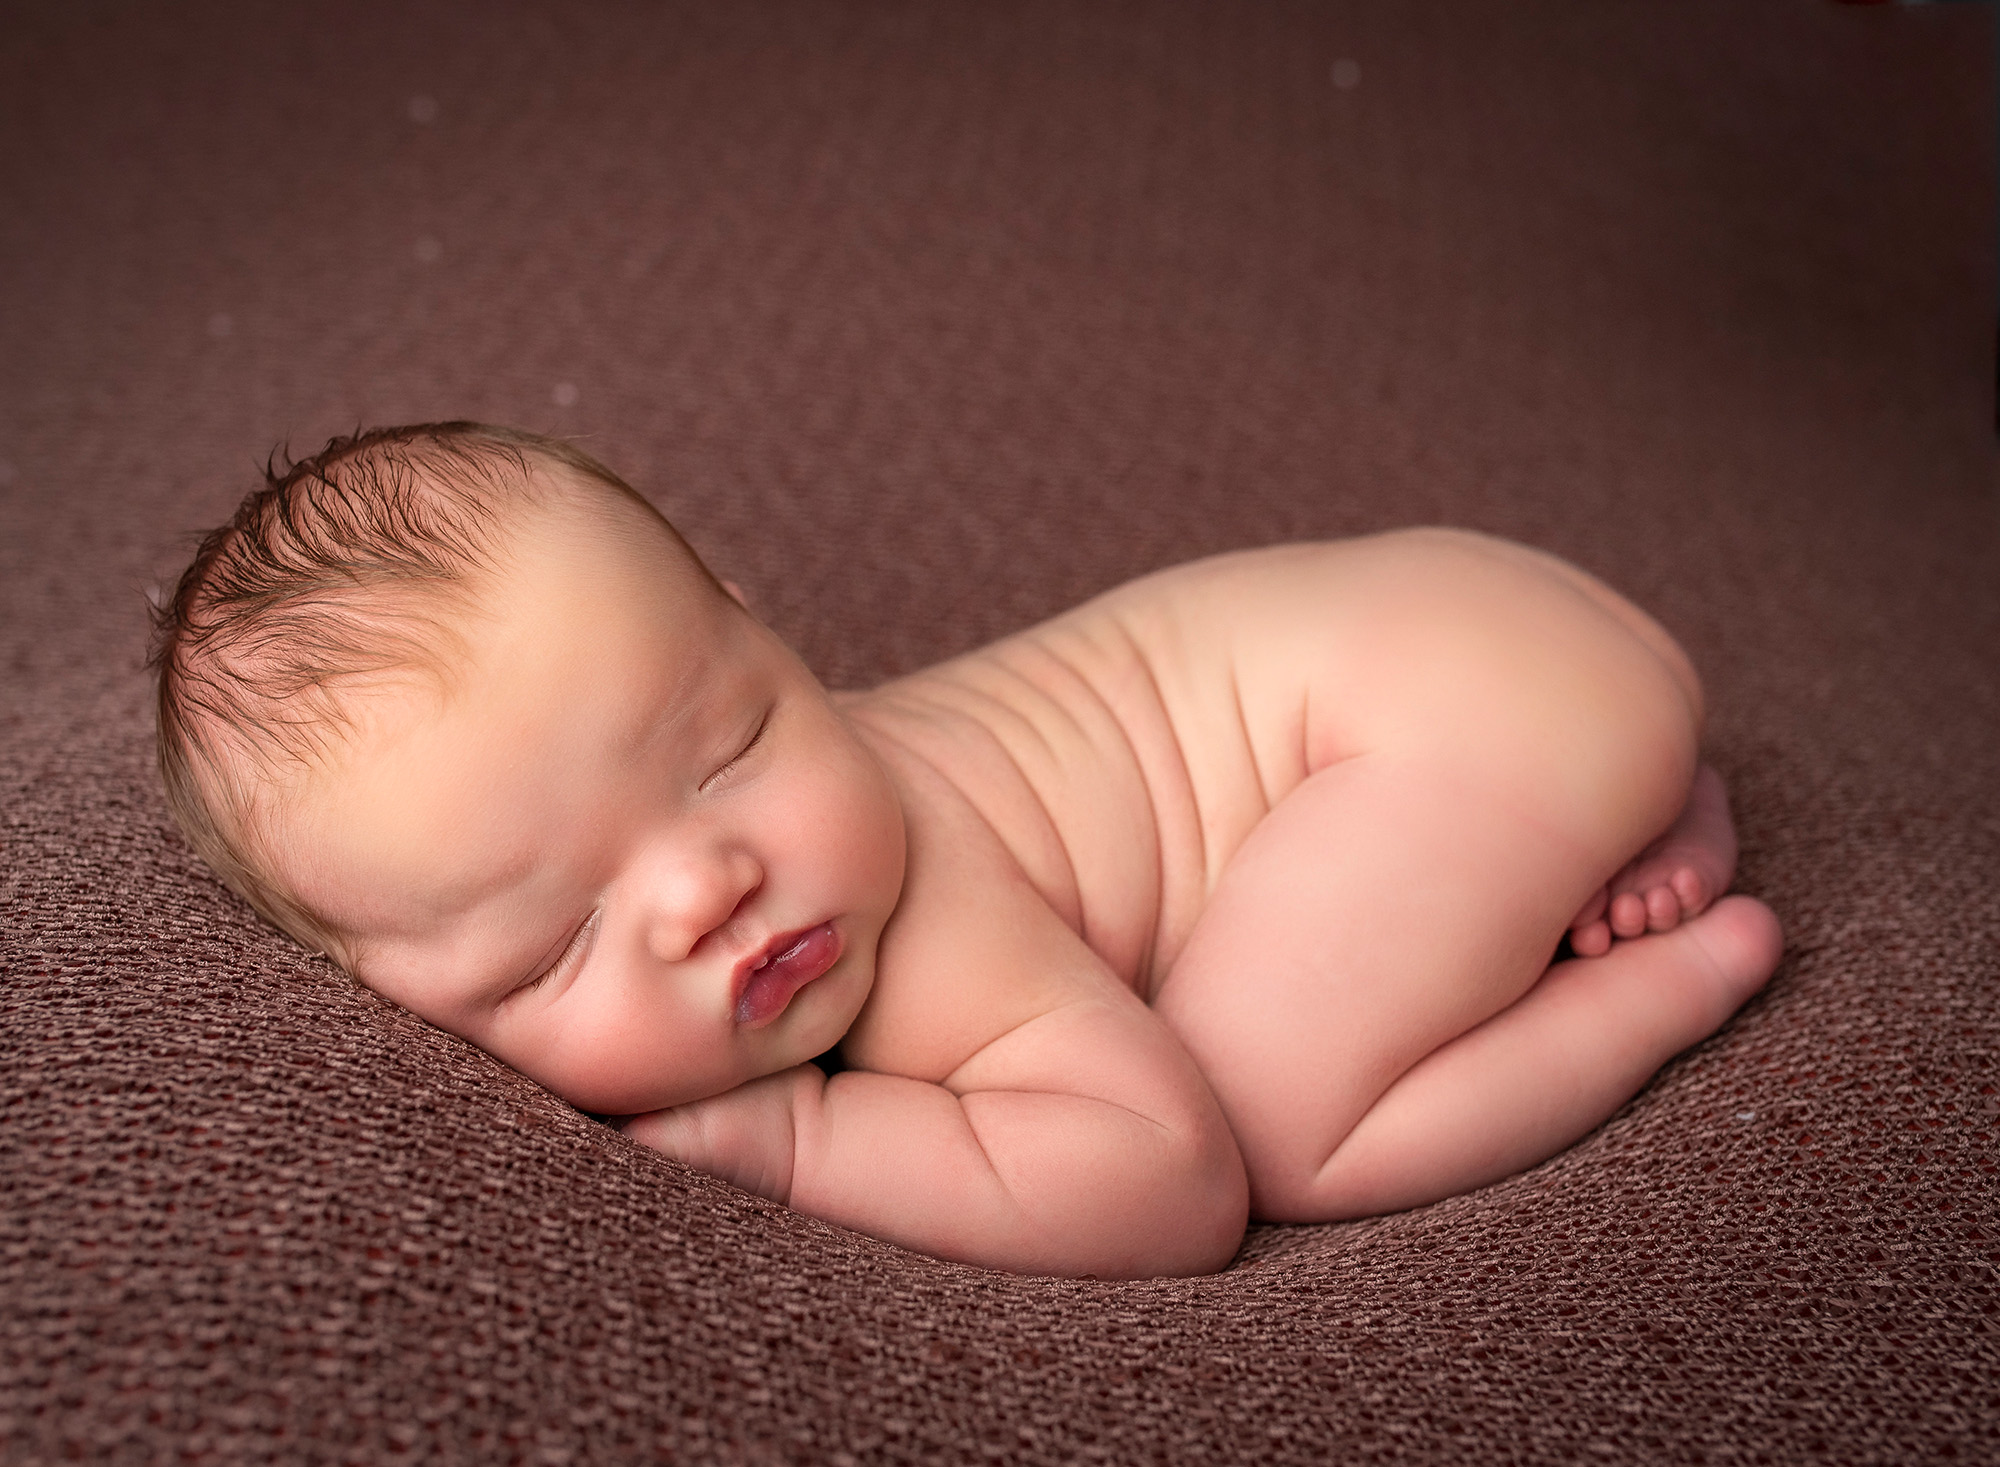 asleep naked newborn baby boy on rustic brown blanket